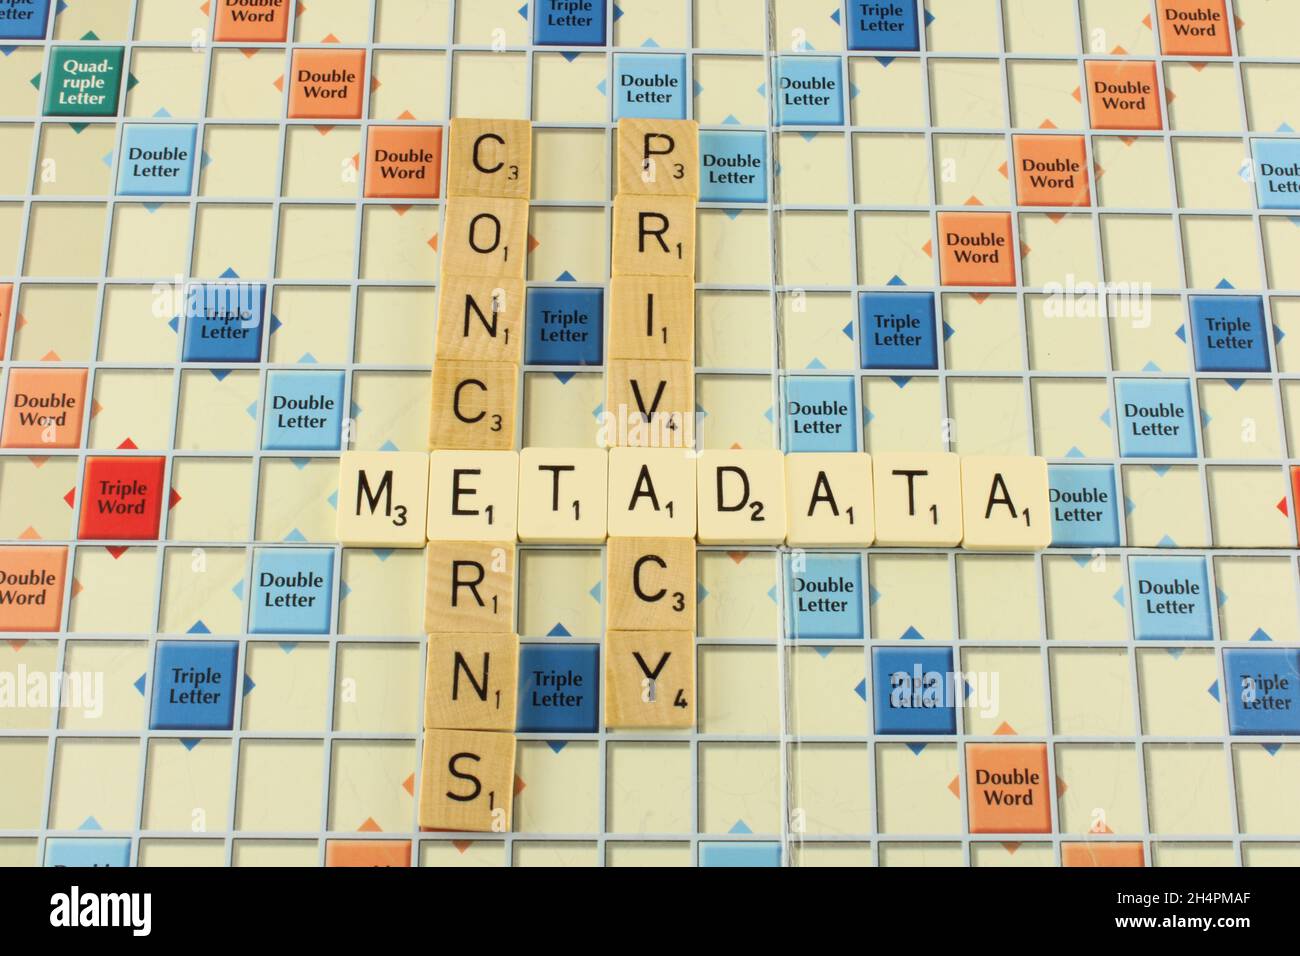 Datenschutz bei Metadaten mit Metadaten in Weiß, um die Betonung auf ein Scrabble-Board zu legen Stockfoto